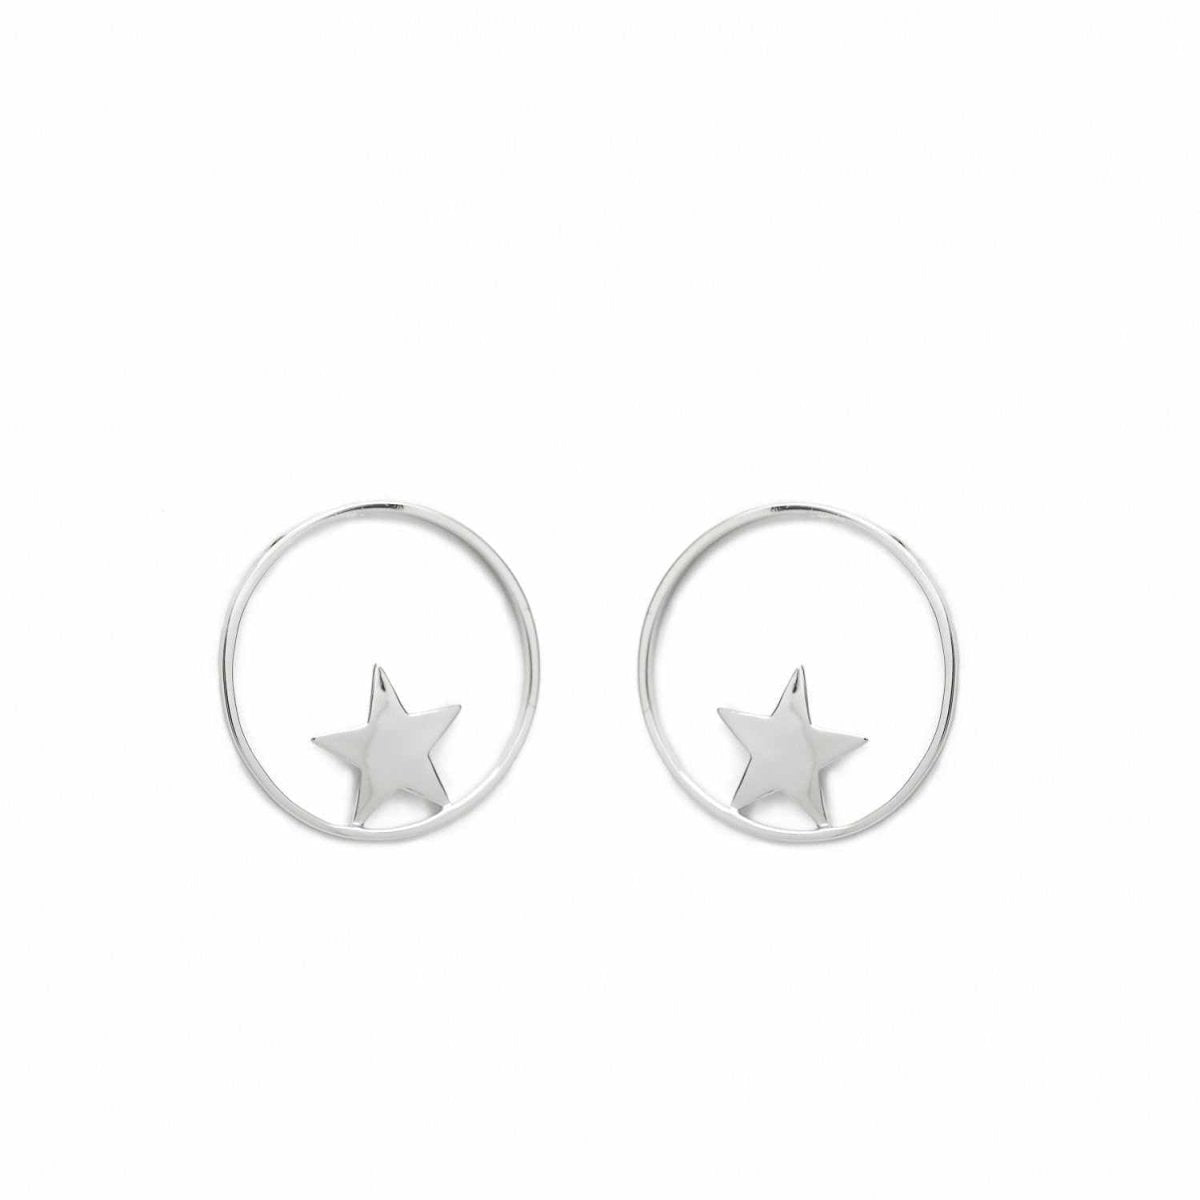 Pendiente · Pendientes aro plata circular frontal con motivo de estrella